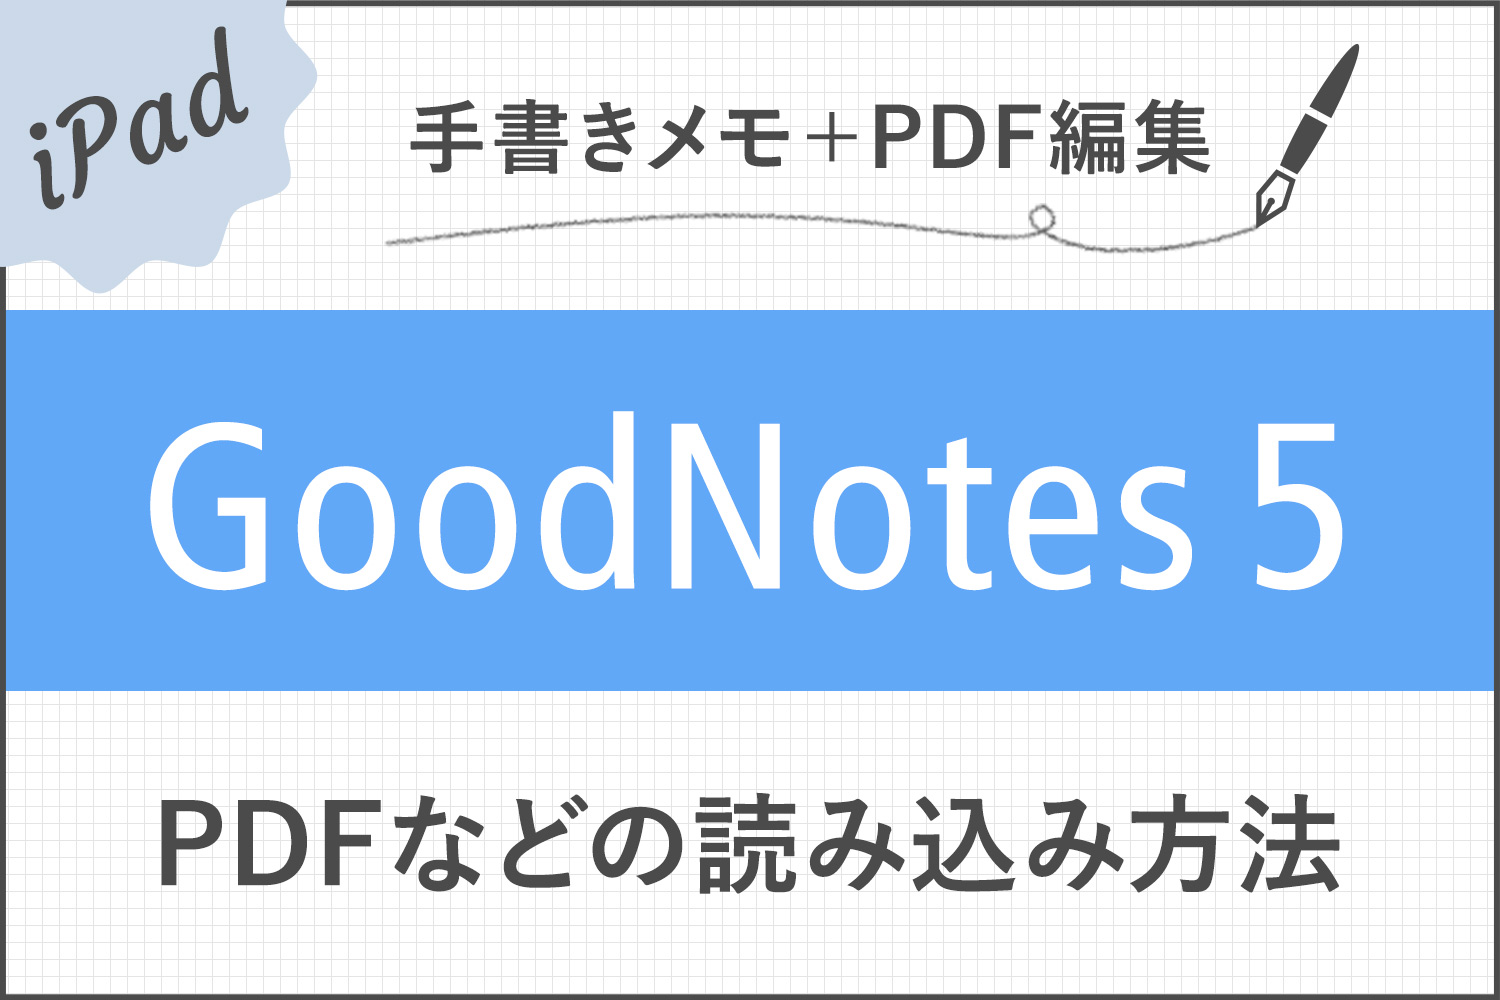 【GoodNotes 5】PDFドキュメントの読み込み方法・注釈メモの書き方まとめ【テキスト検索も可能】